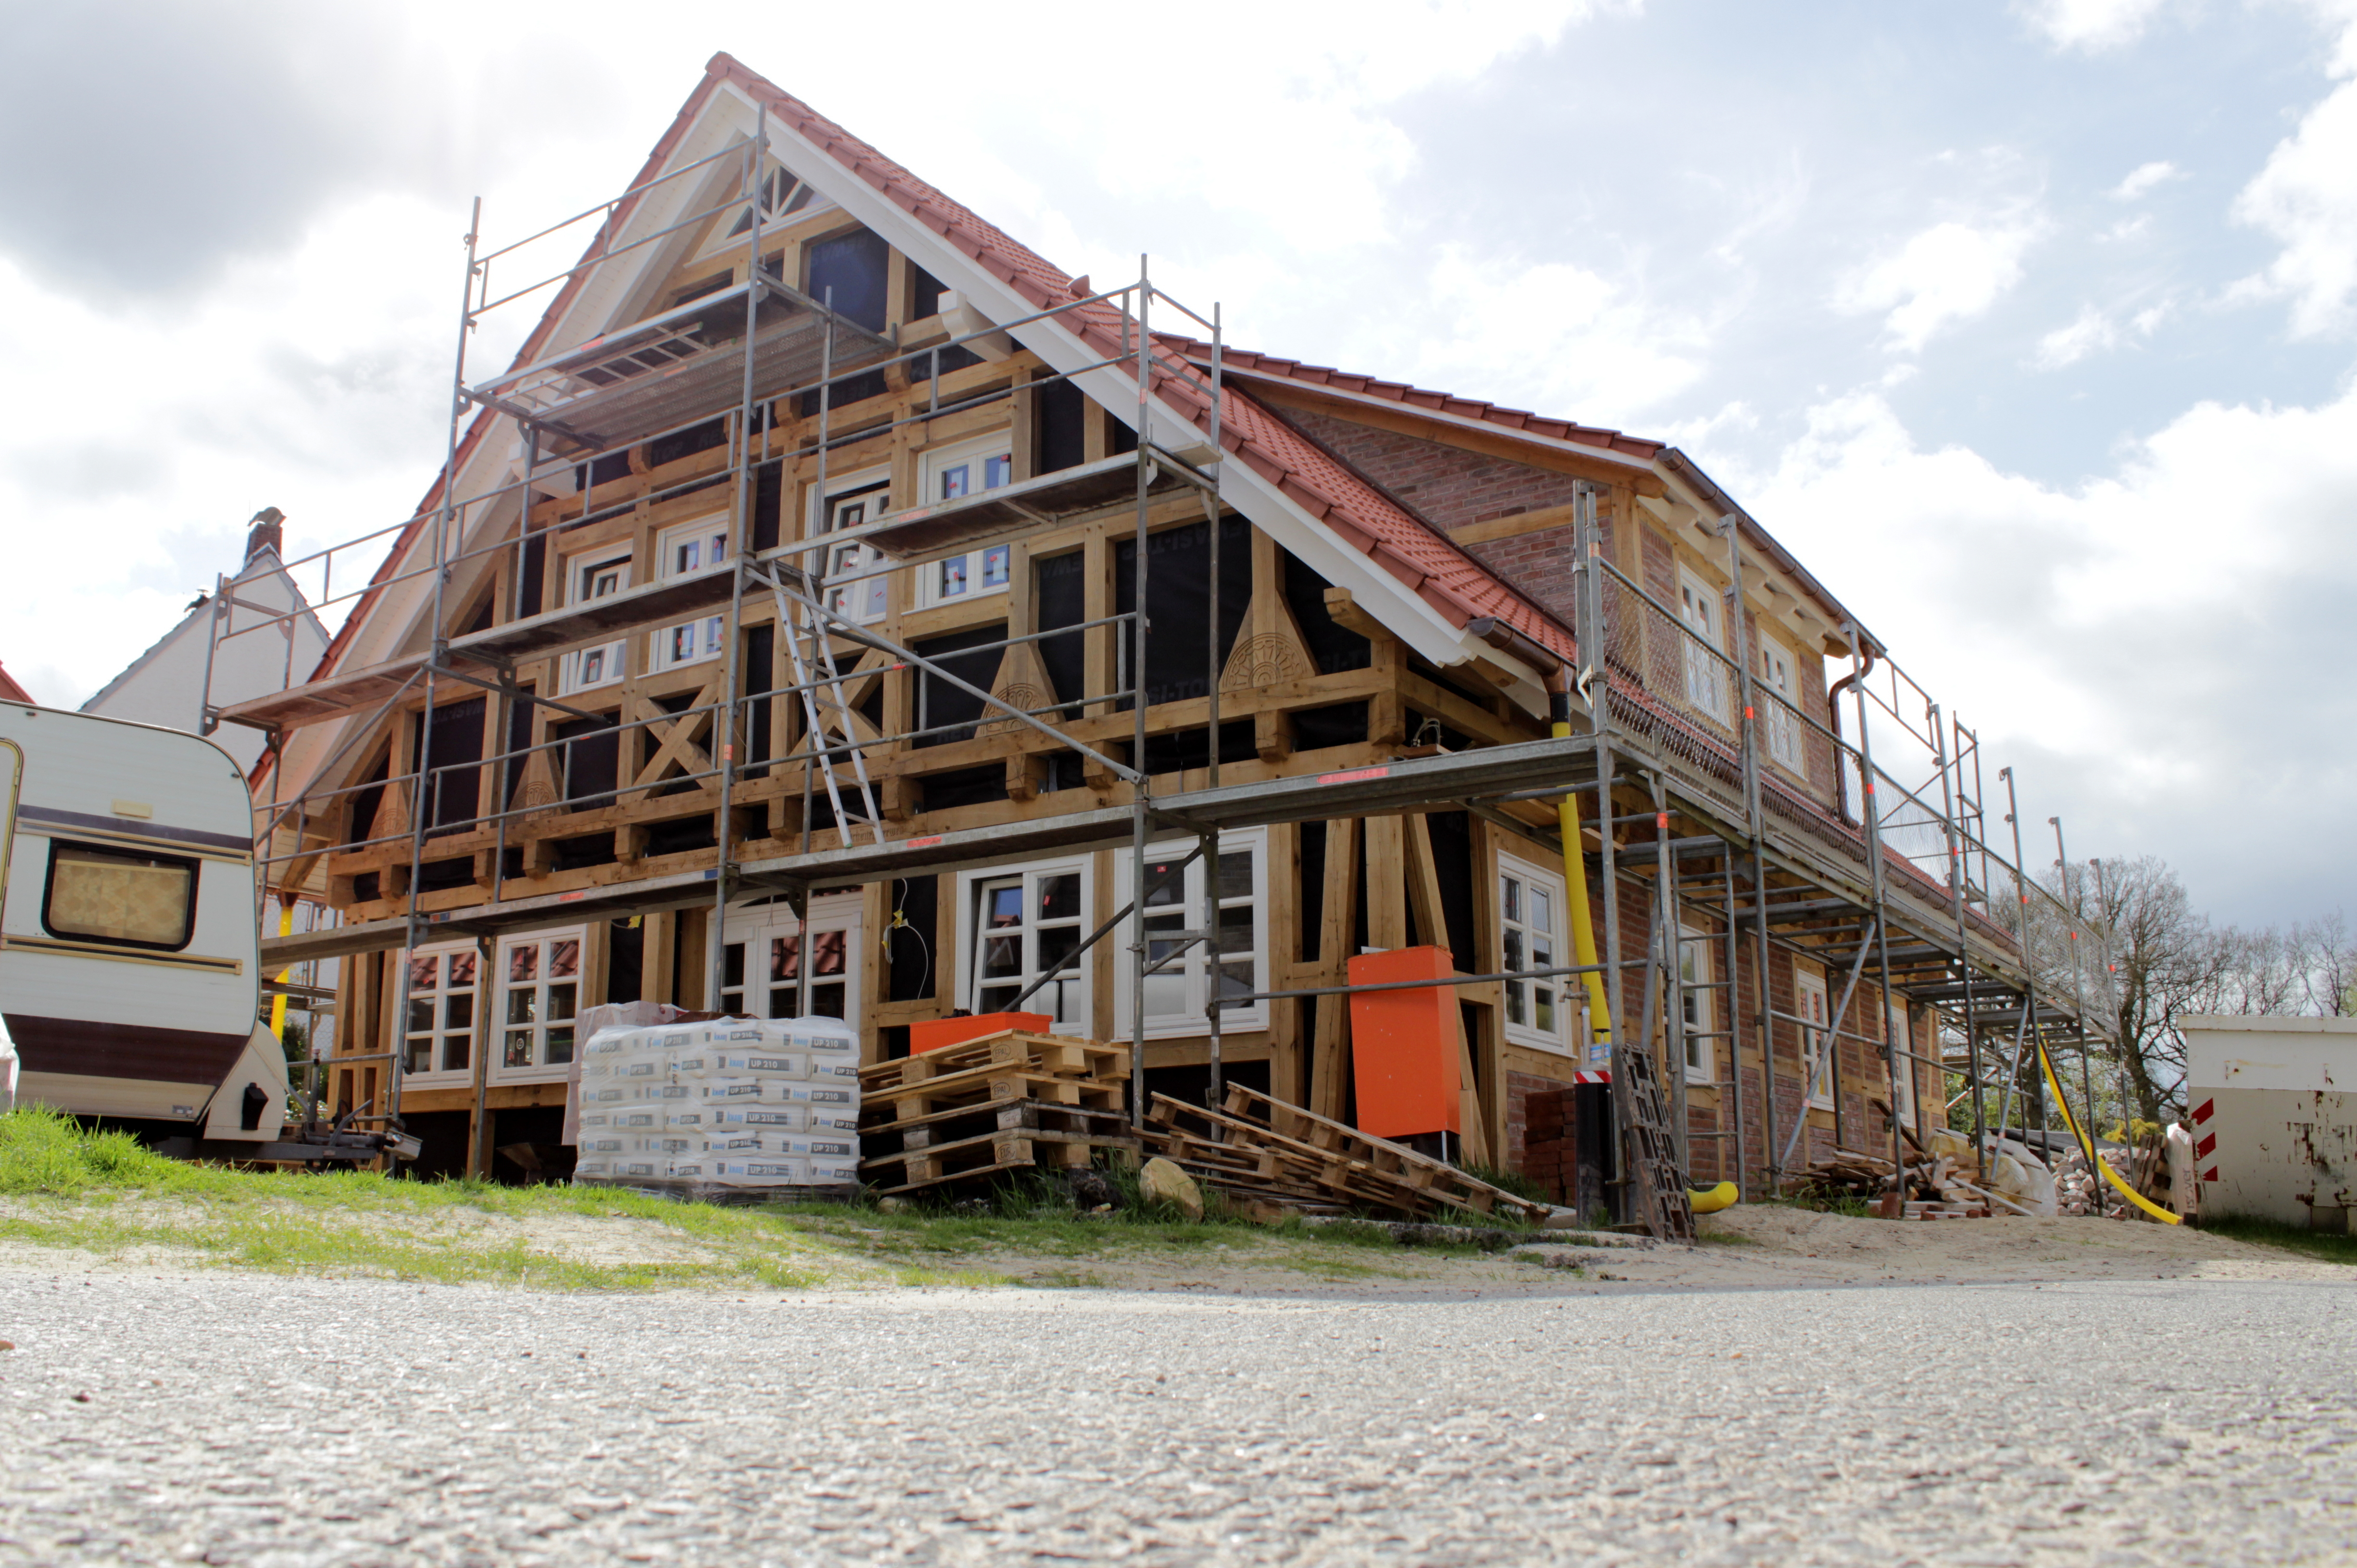 EICHEN-Fachwerkhaus in Ritterhude (Niedersachsen/Osterholz) April 2014